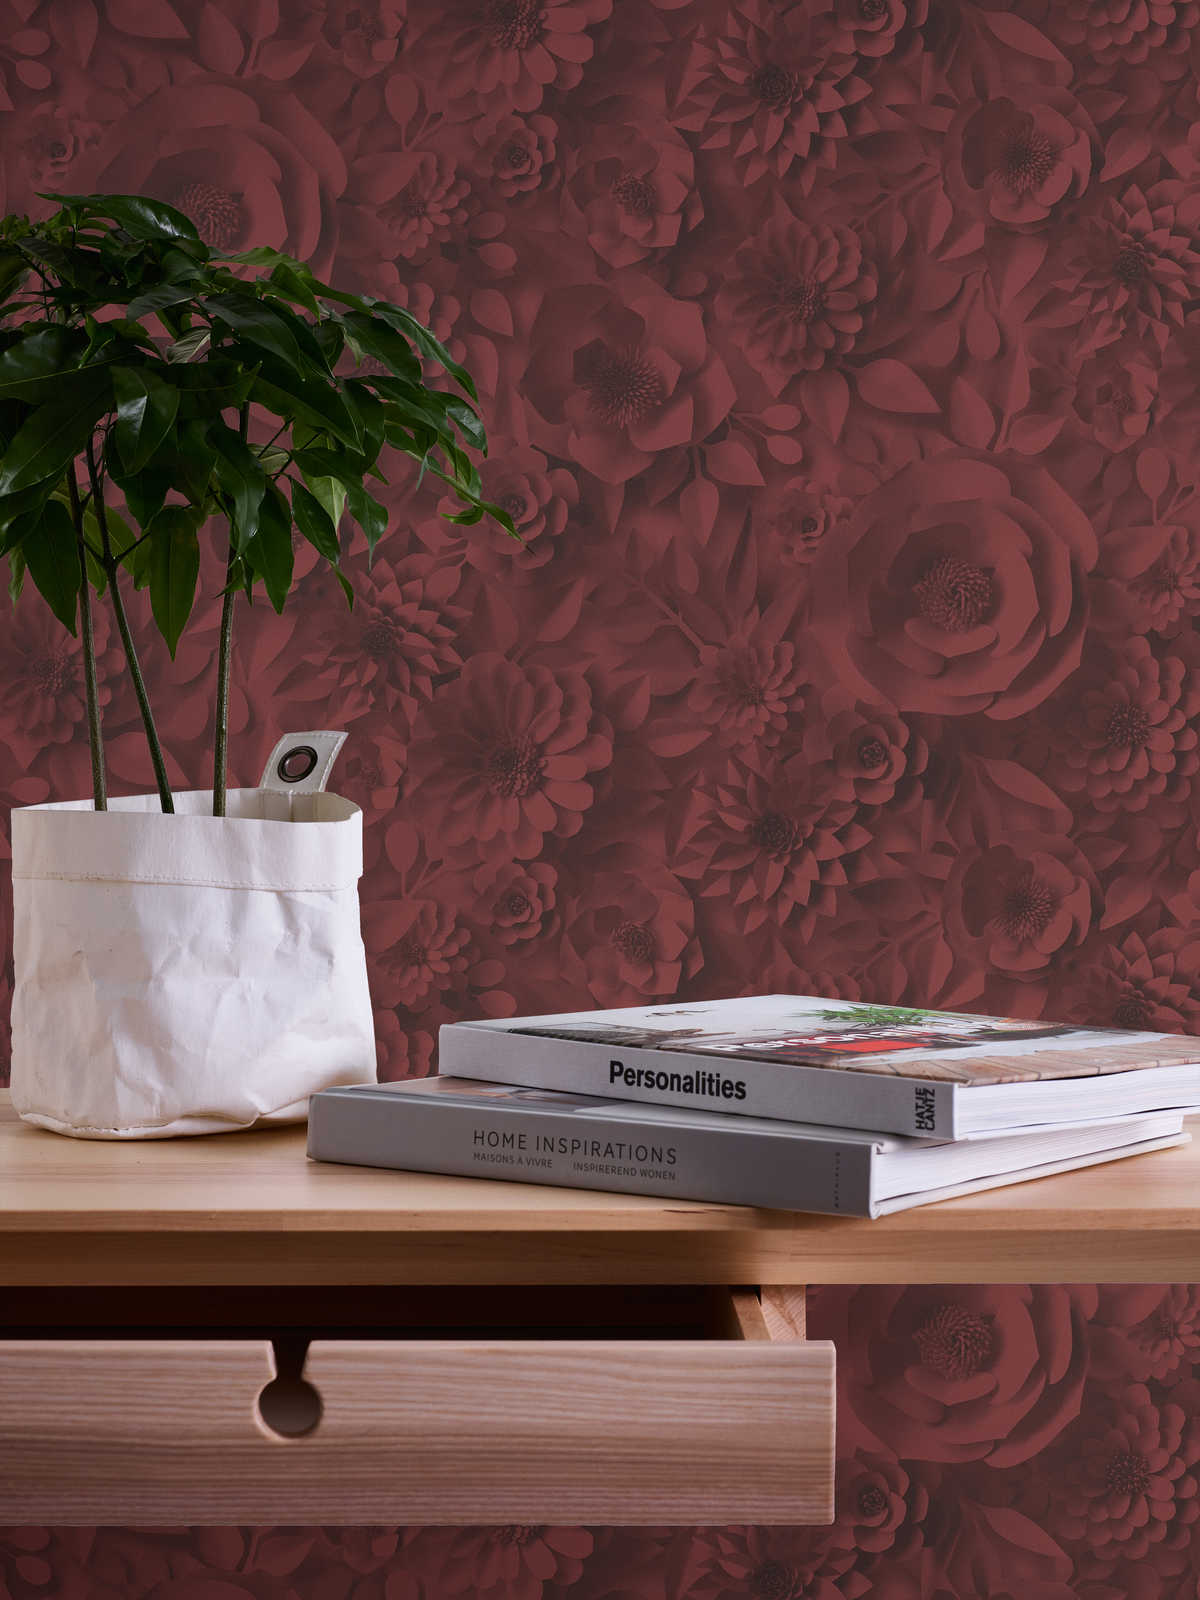             3D Behang met Papieren Bloemen, Grafisch Bloemenpatroon - Rood
        